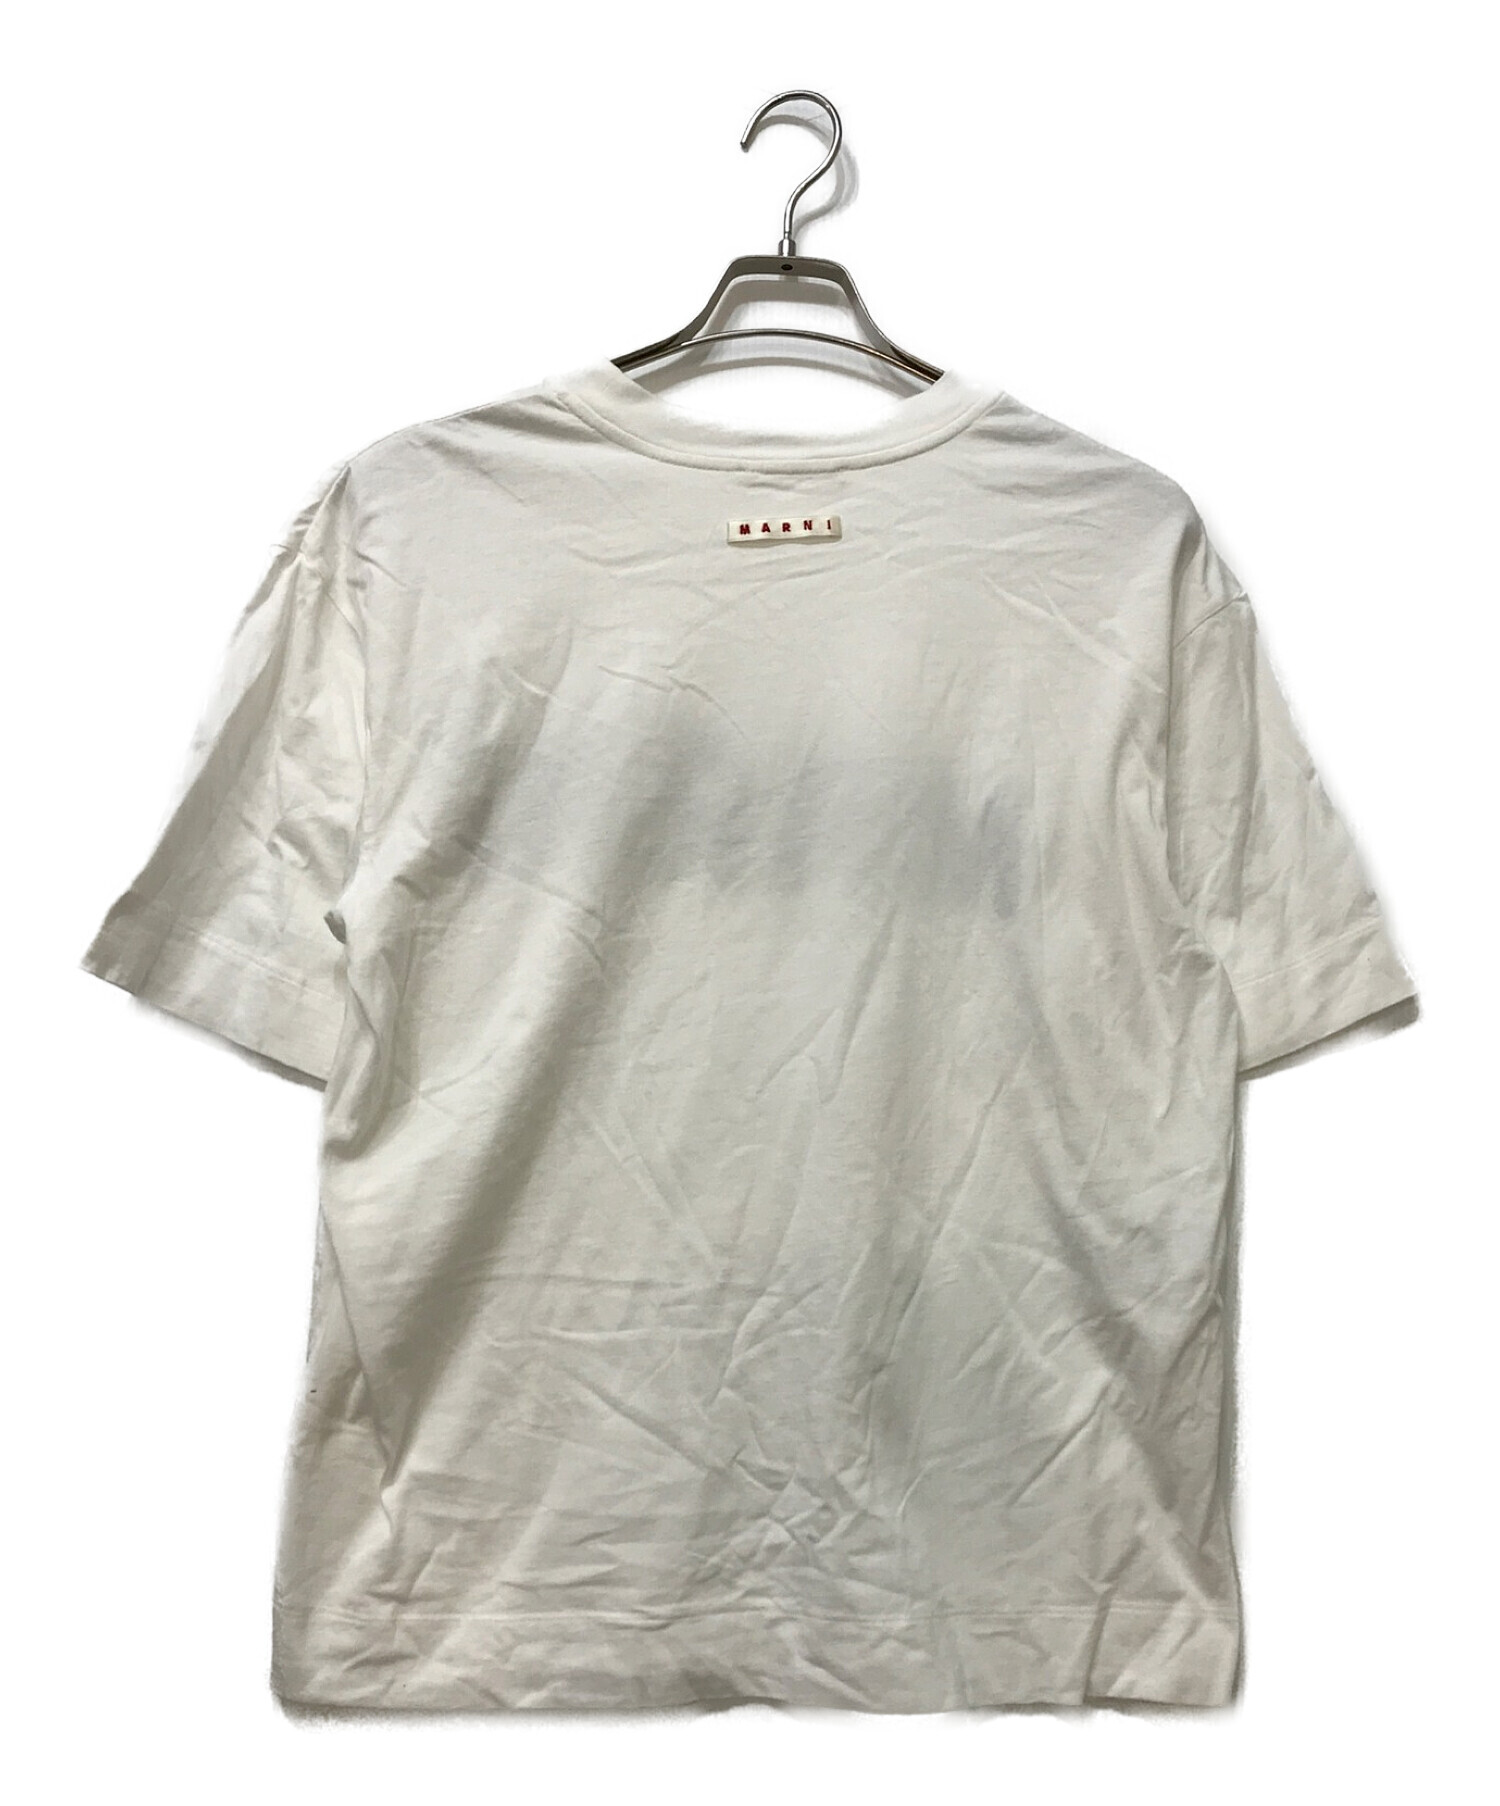 MARNI (マルニ) ロゴプリントTシャツ ホワイト サイズ:38